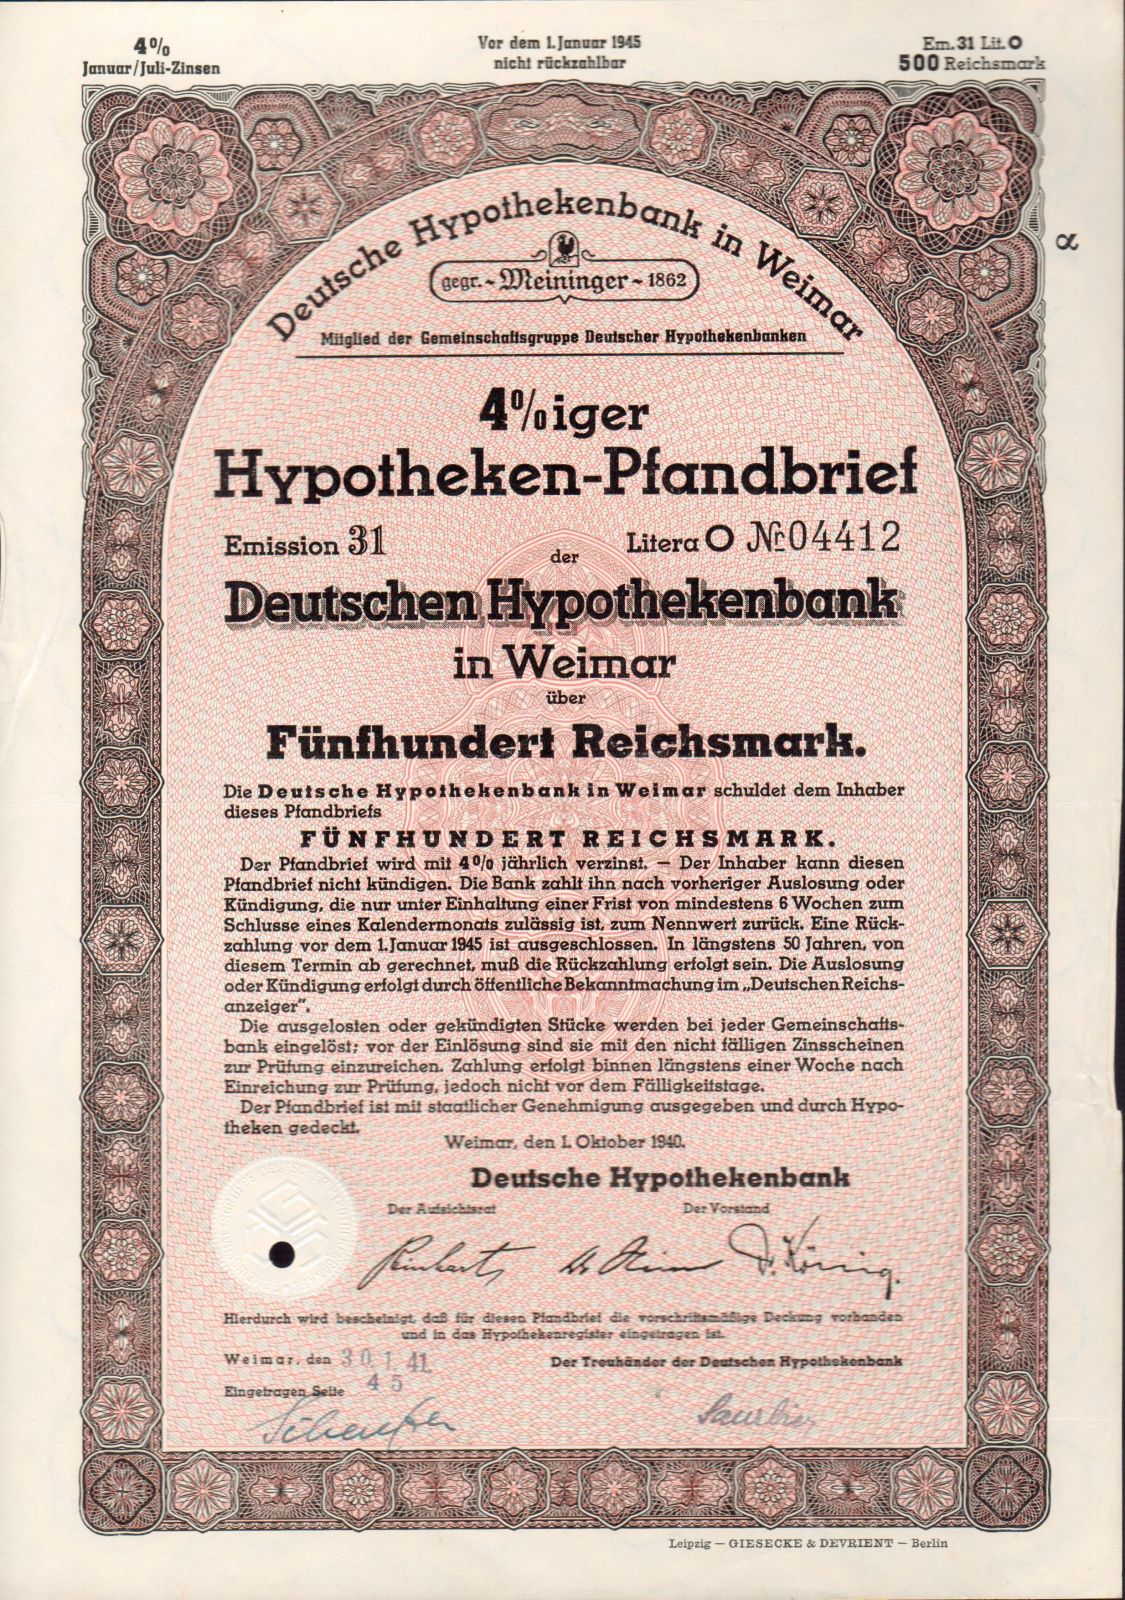 Dluhopis Deutsche hypothekenbank in Weimar/1940/, 500 Reichsmark, 4%, formát A4